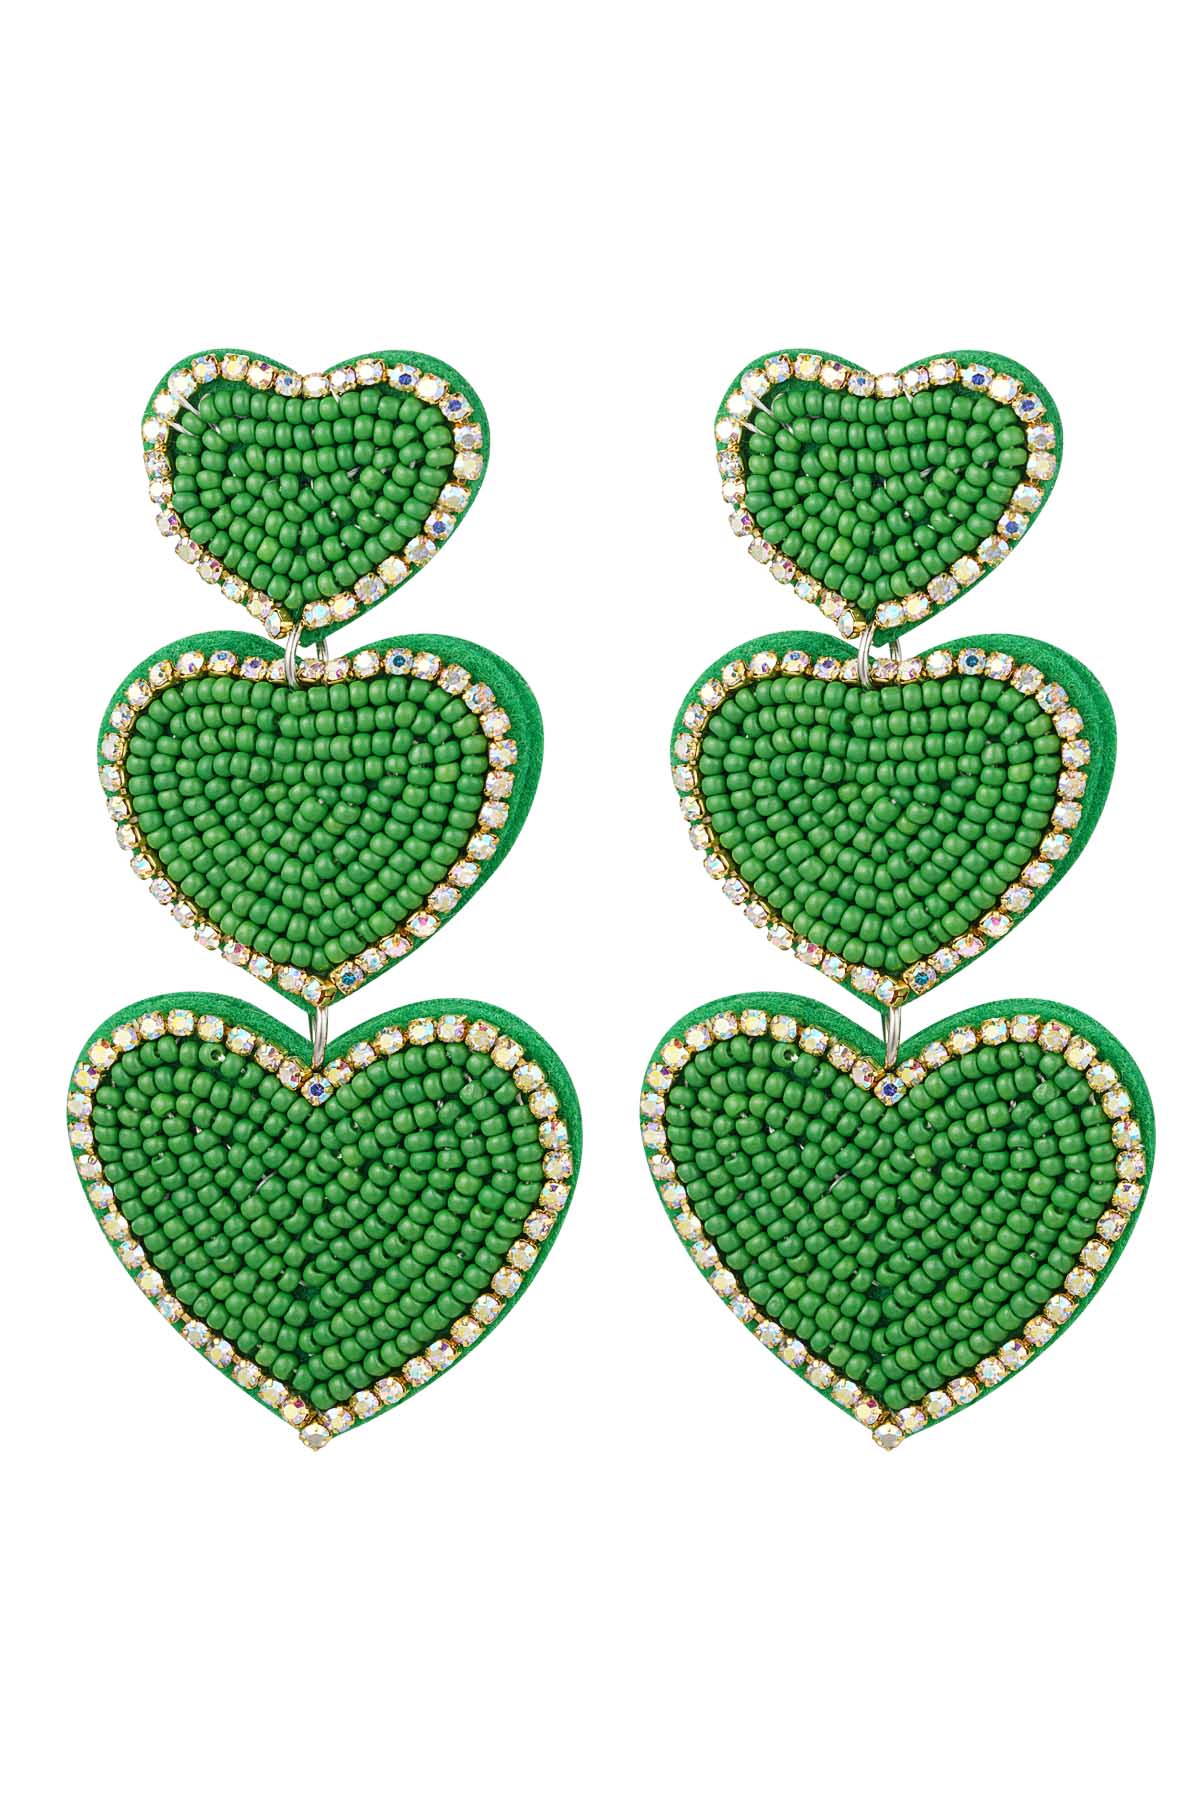 Küpe boncukları 3 x kalp yeşili Green Glass h5 